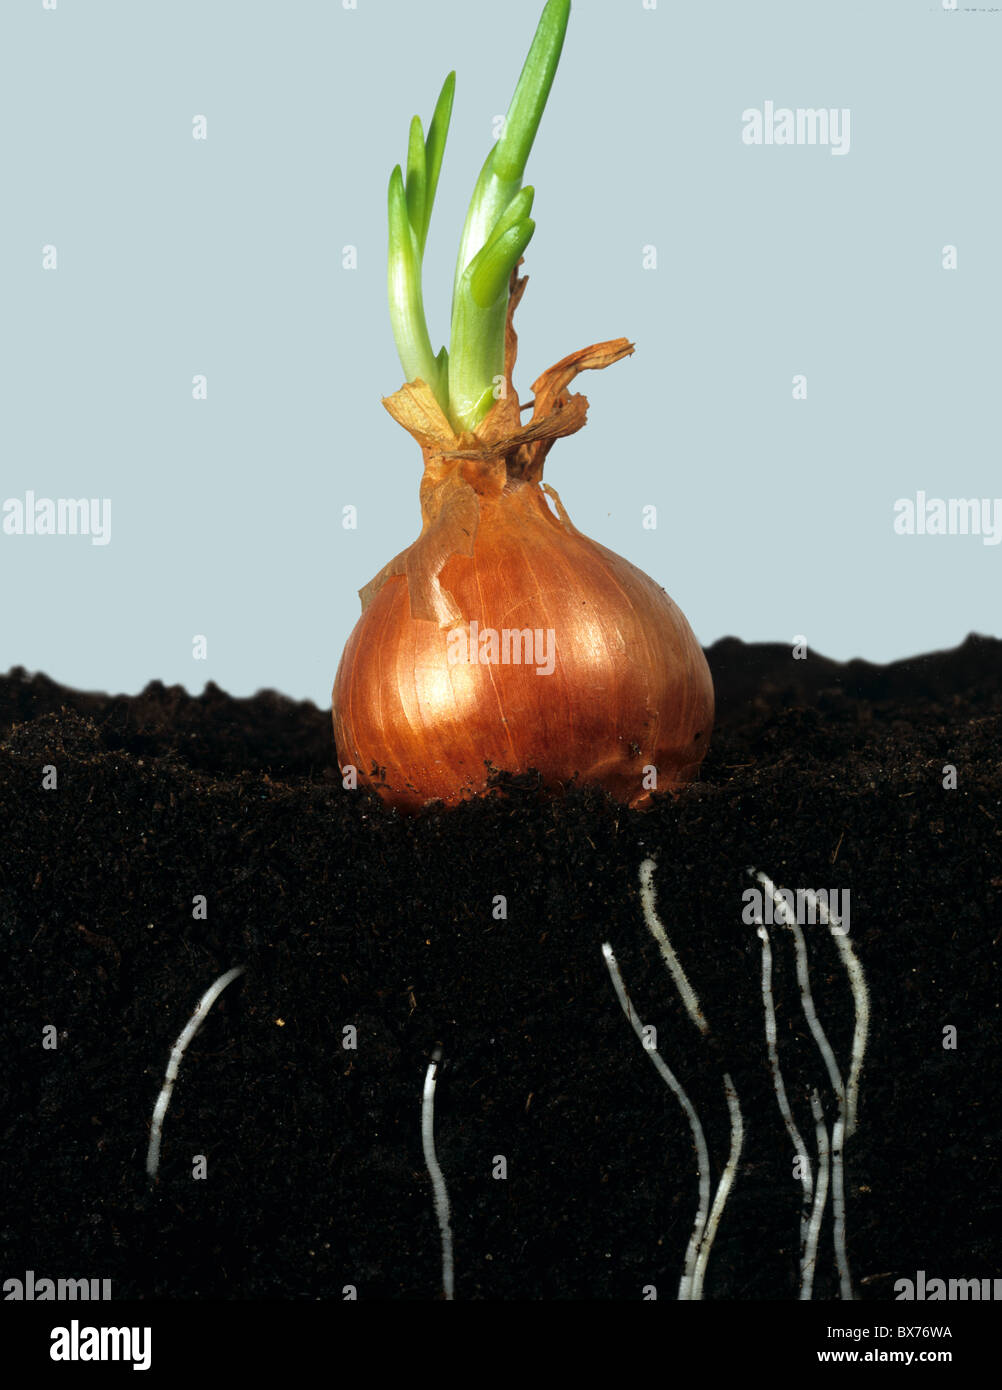 Bulbo della cipolla inizio per riprendere e sviluppare radici nel suolo Foto Stock